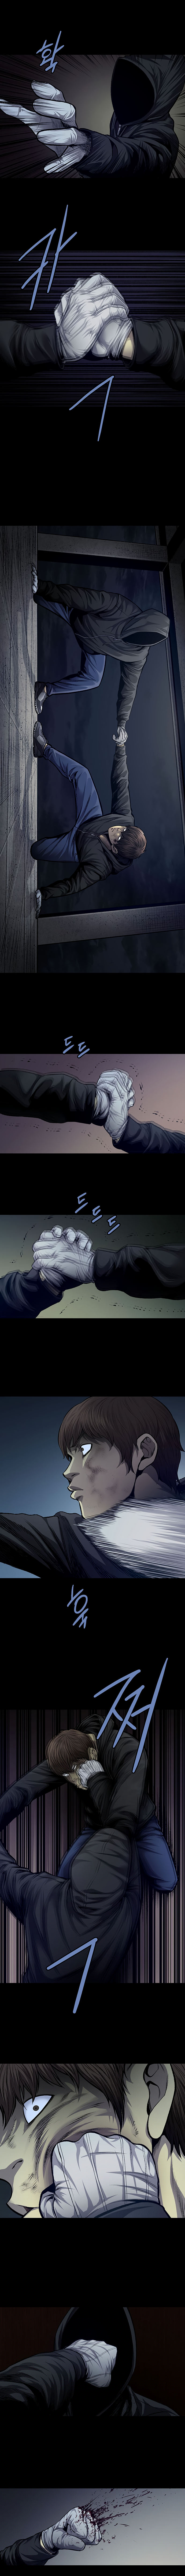 Vigilante - Chapter 42 Page 4